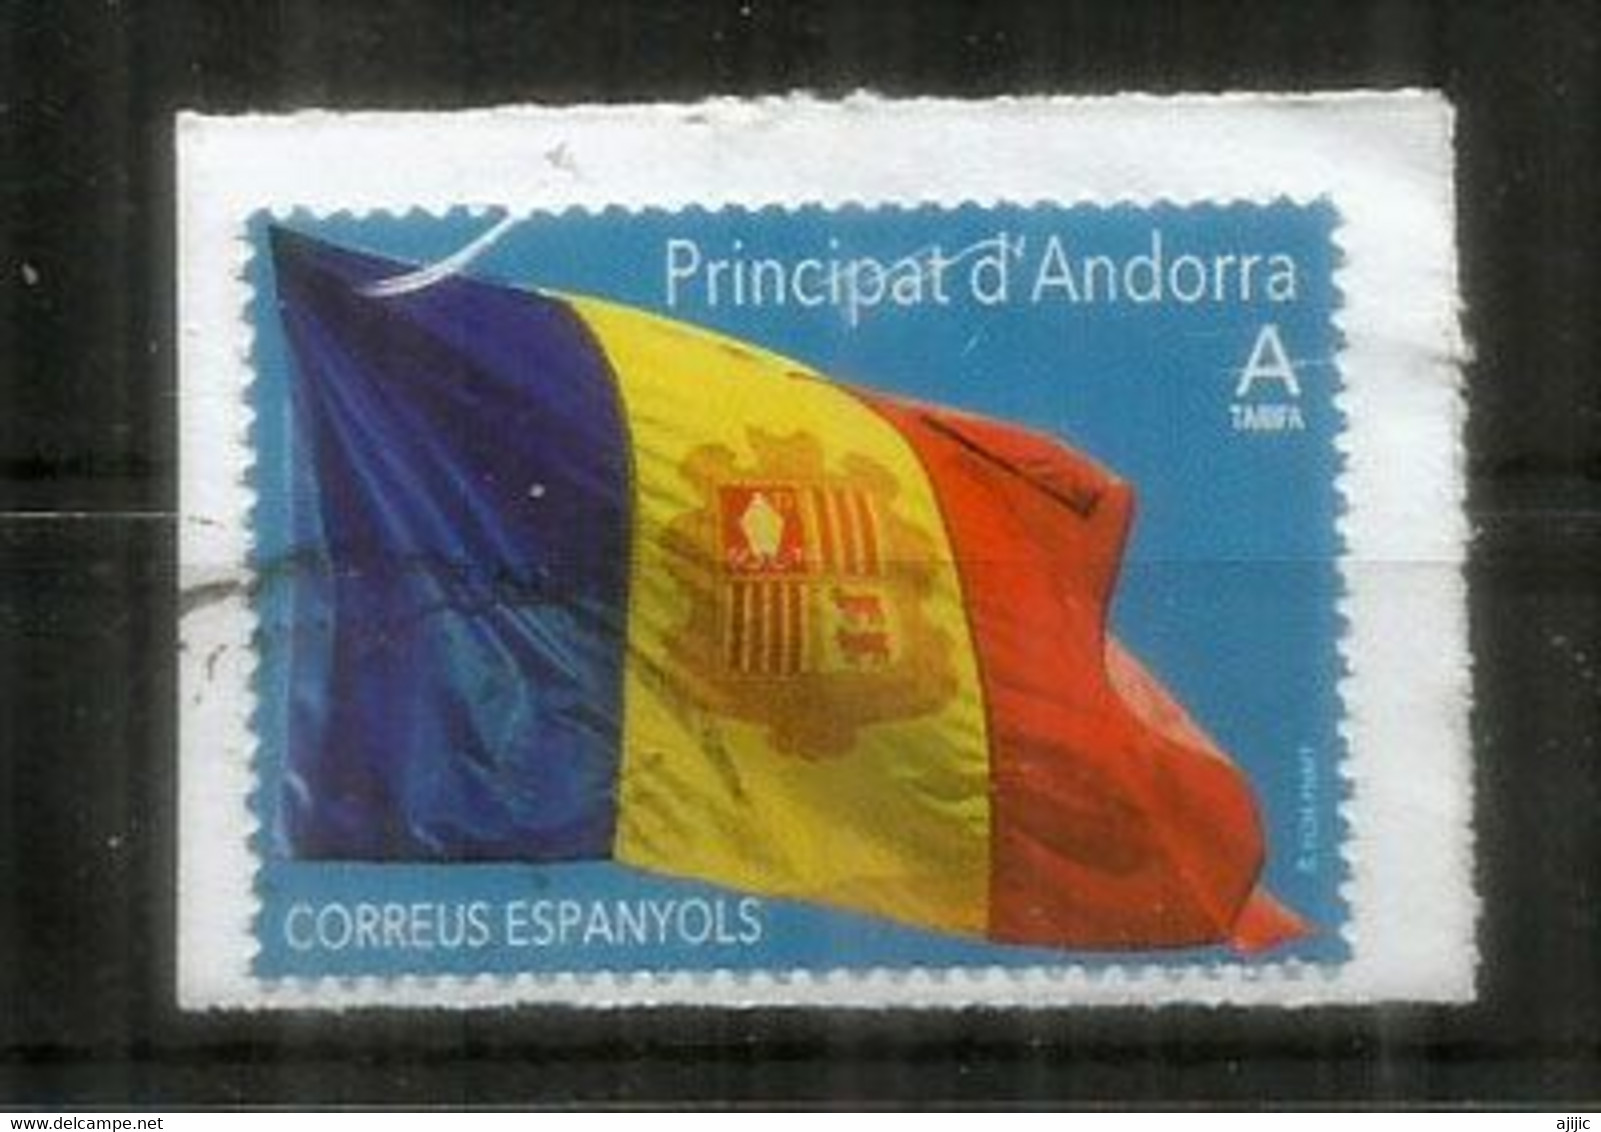 Bandera D'Andorra /Drapeau D'Andorre. (Poder és Més Fort) 2020, Usado, Primera Calidad. AND ESP - Usados